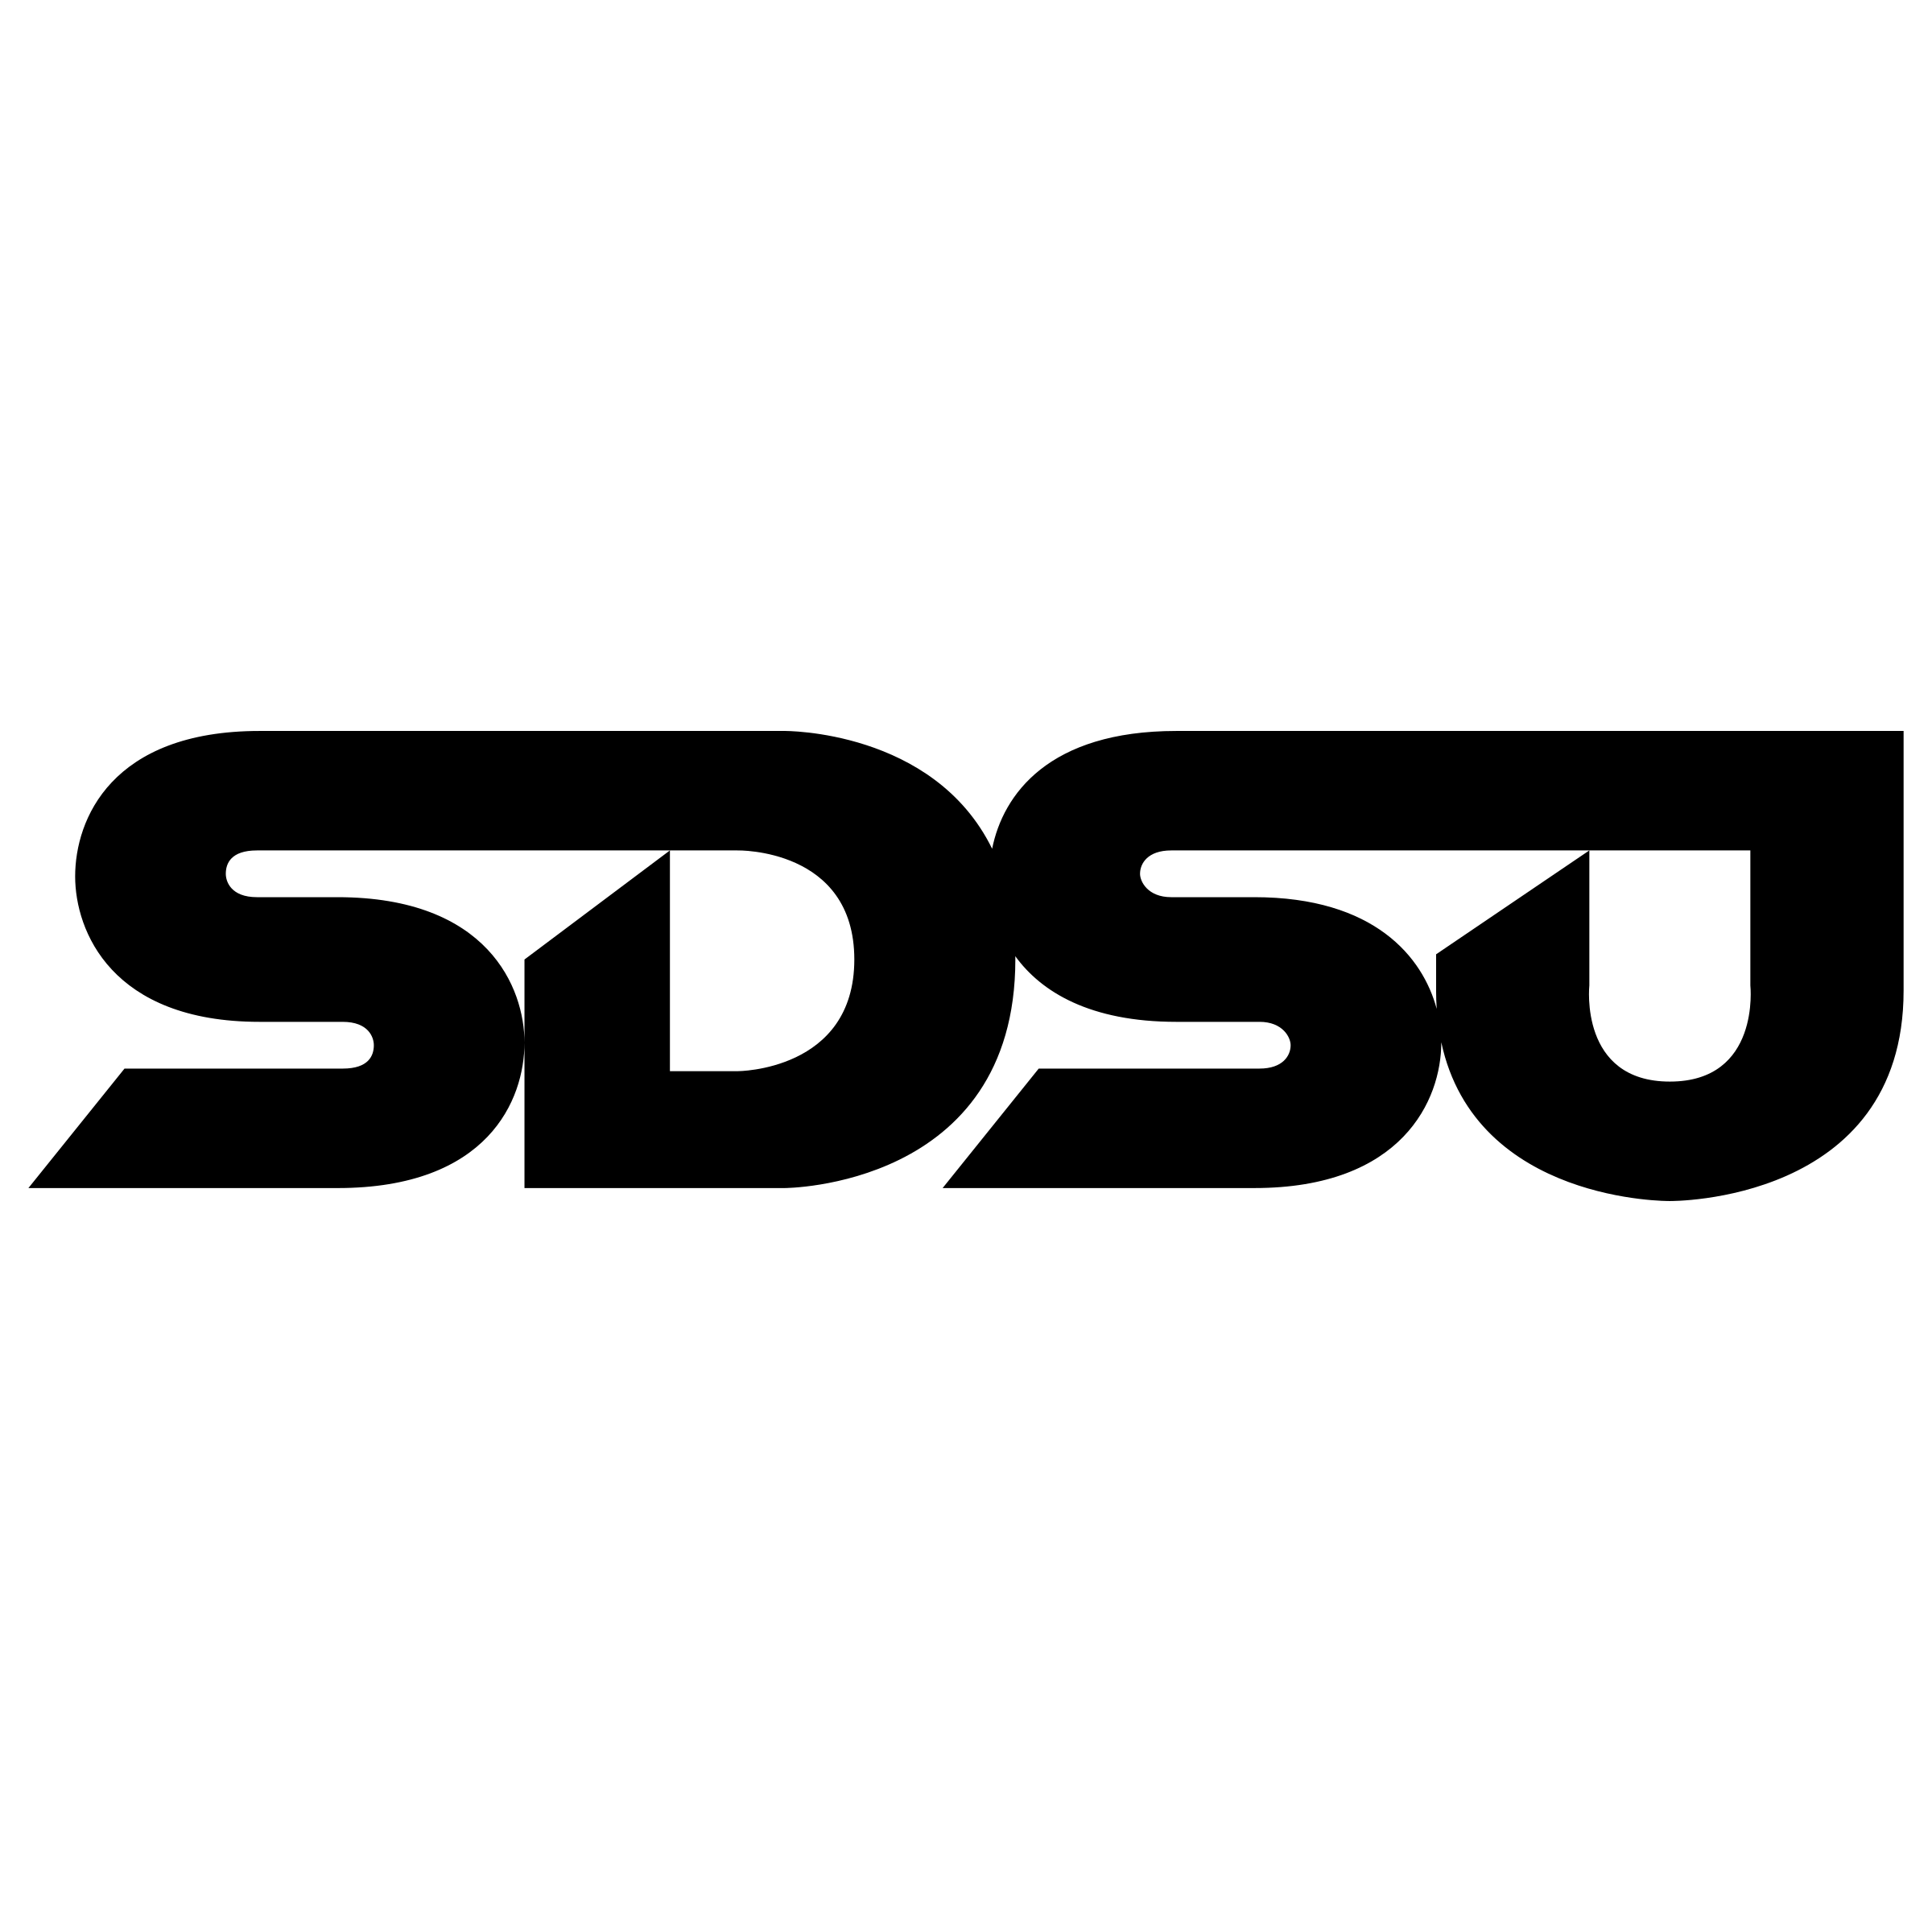 SDSU Logo - SDSU Logo PNG Transparent & SVG Vector - Freebie Supply